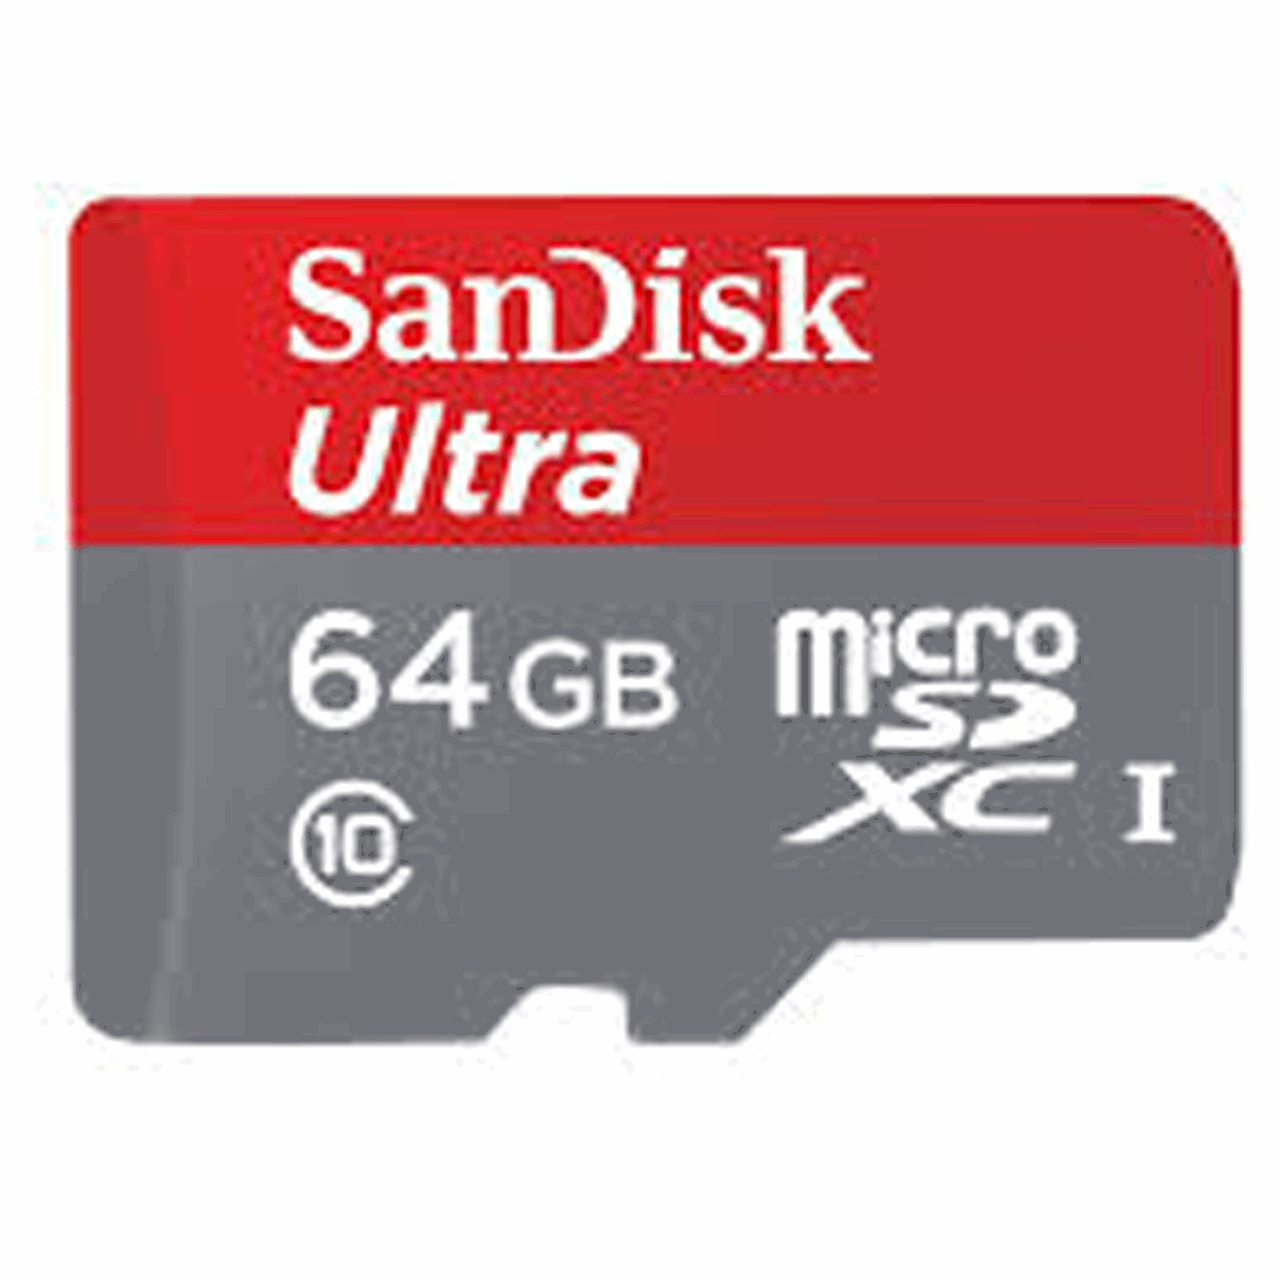 تصویر کارت حافظه MicroSDXC سن دیسک مدلUltra کلاس 10 استاندارد UHS-I U1 سرعت 80MBps همراه با آداپتور SD ظرفیت 64 گیگابایت